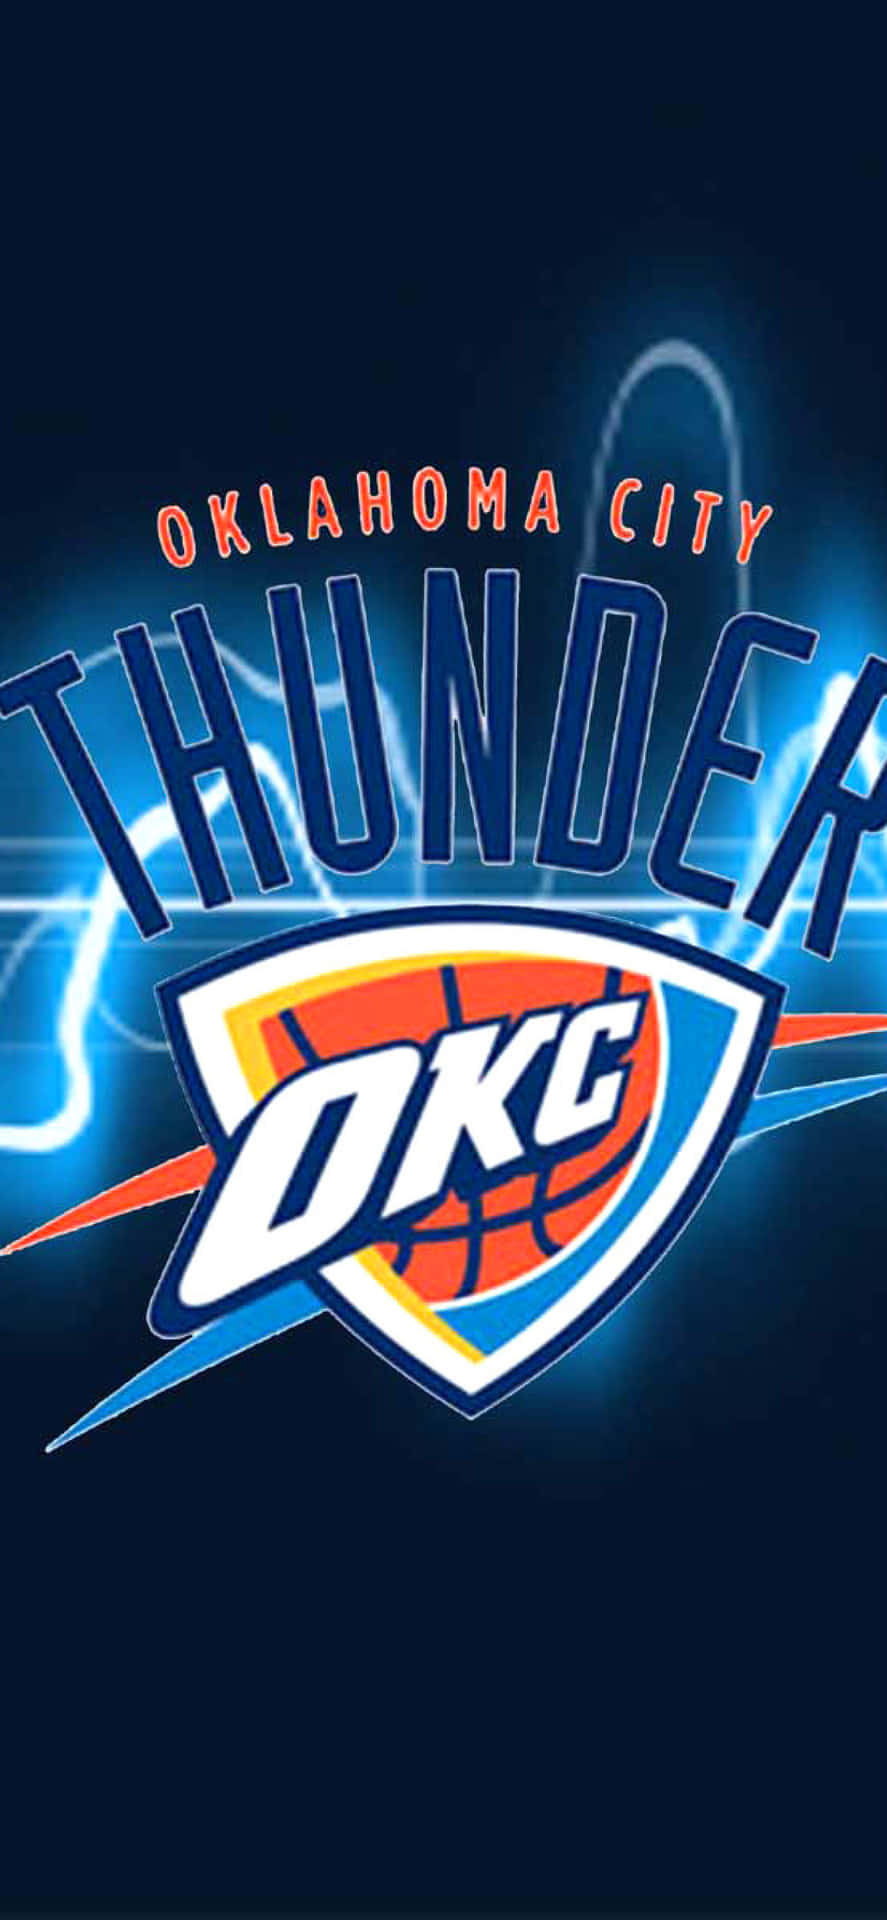 Logotipode Oklahoma City Thunder Okc De La Liga Nba Fondo de pantalla